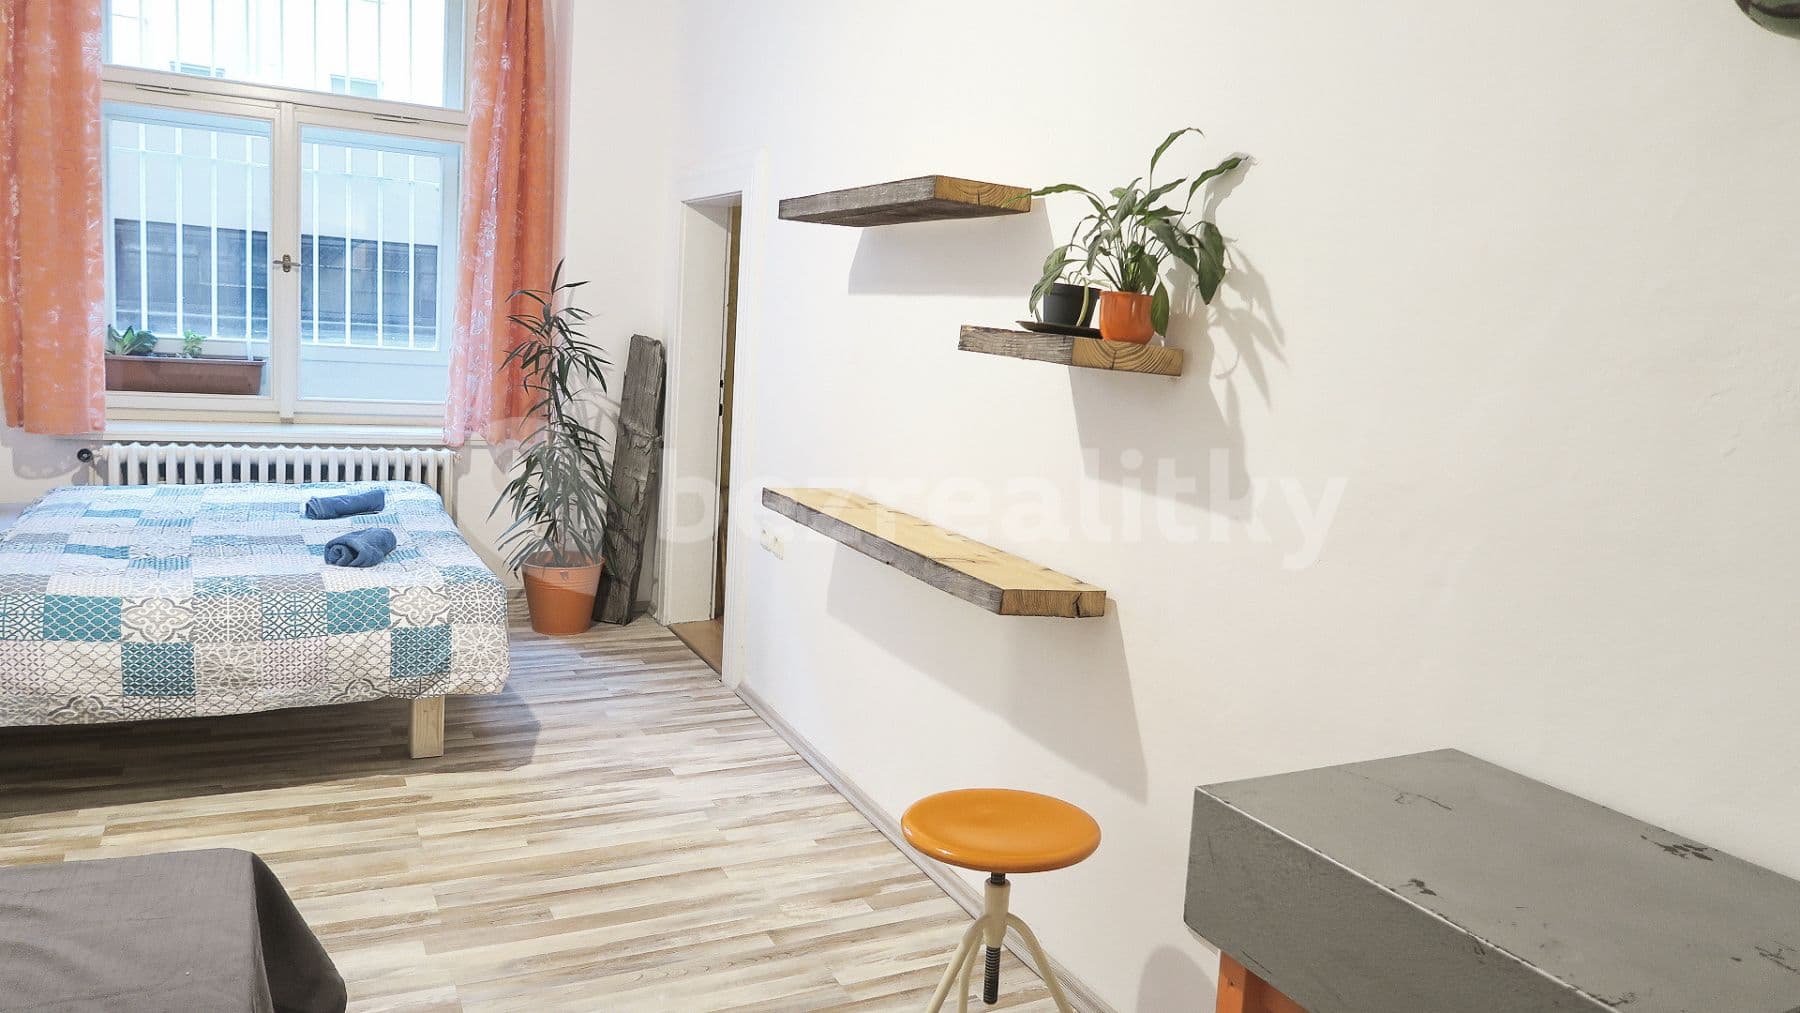 1 bedroom flat to rent, 86 m², Přemyslovská, Prague, Prague